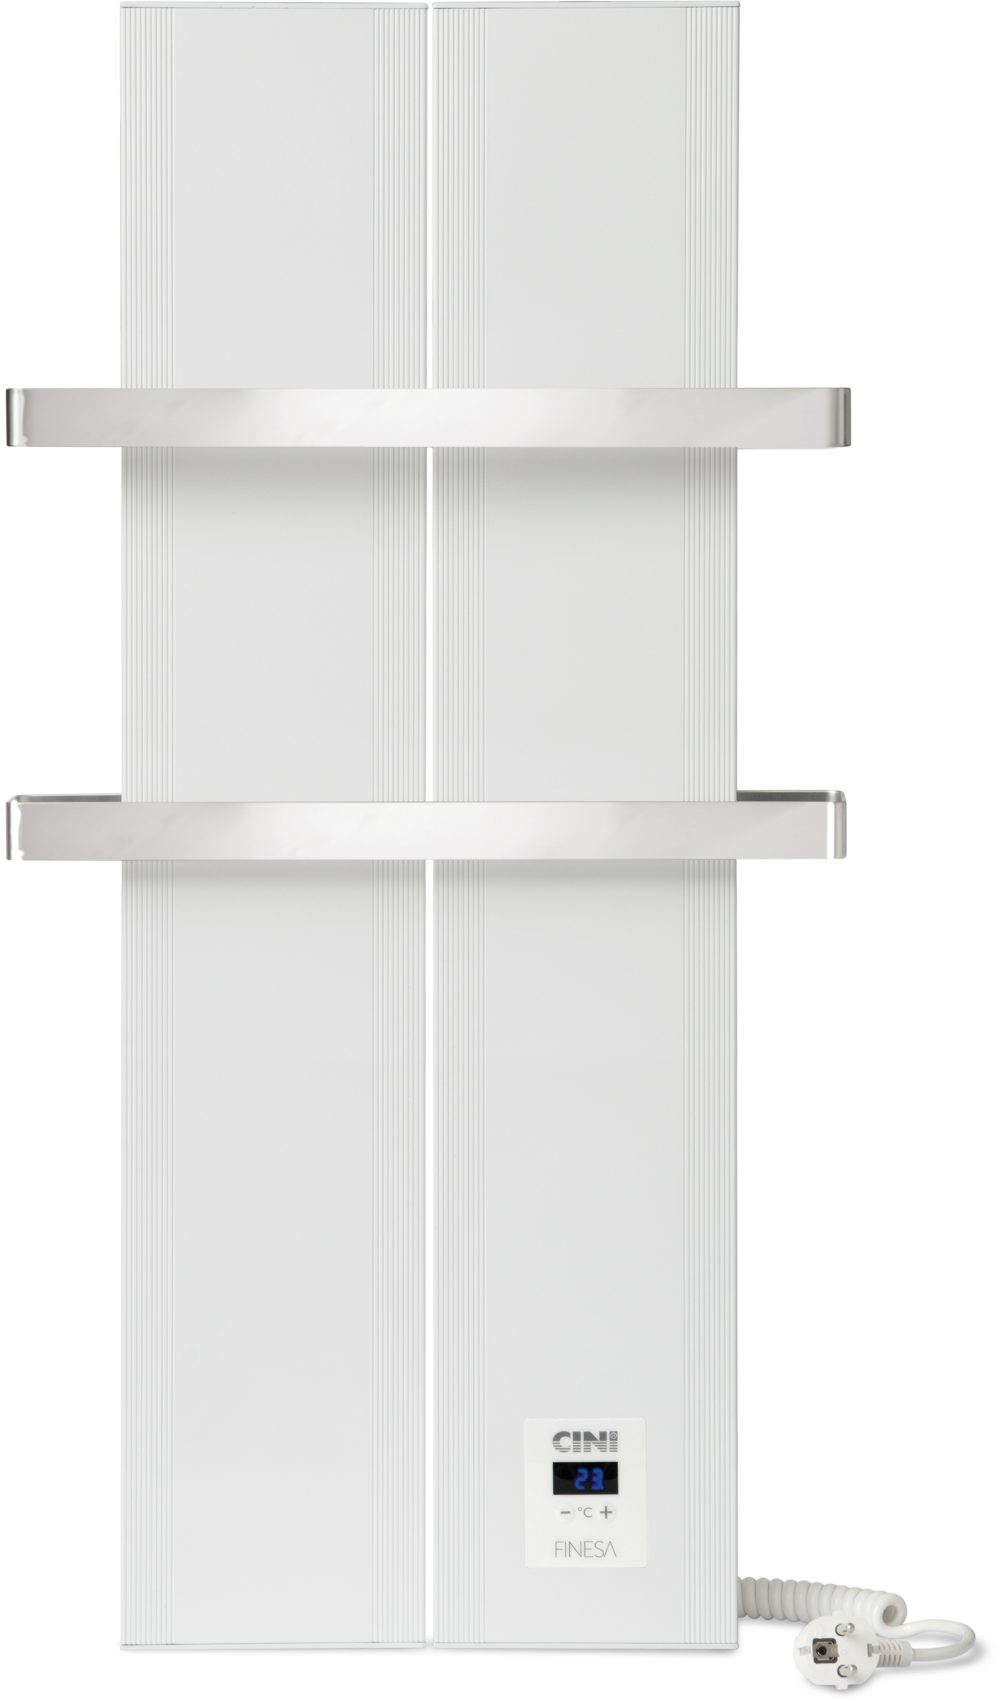 Finesa Elektrischer Badheizkörper mit Smarte Thermostat, Wärmeabgabe 400-1200W, 5 Jahre GARANTIE Weiß